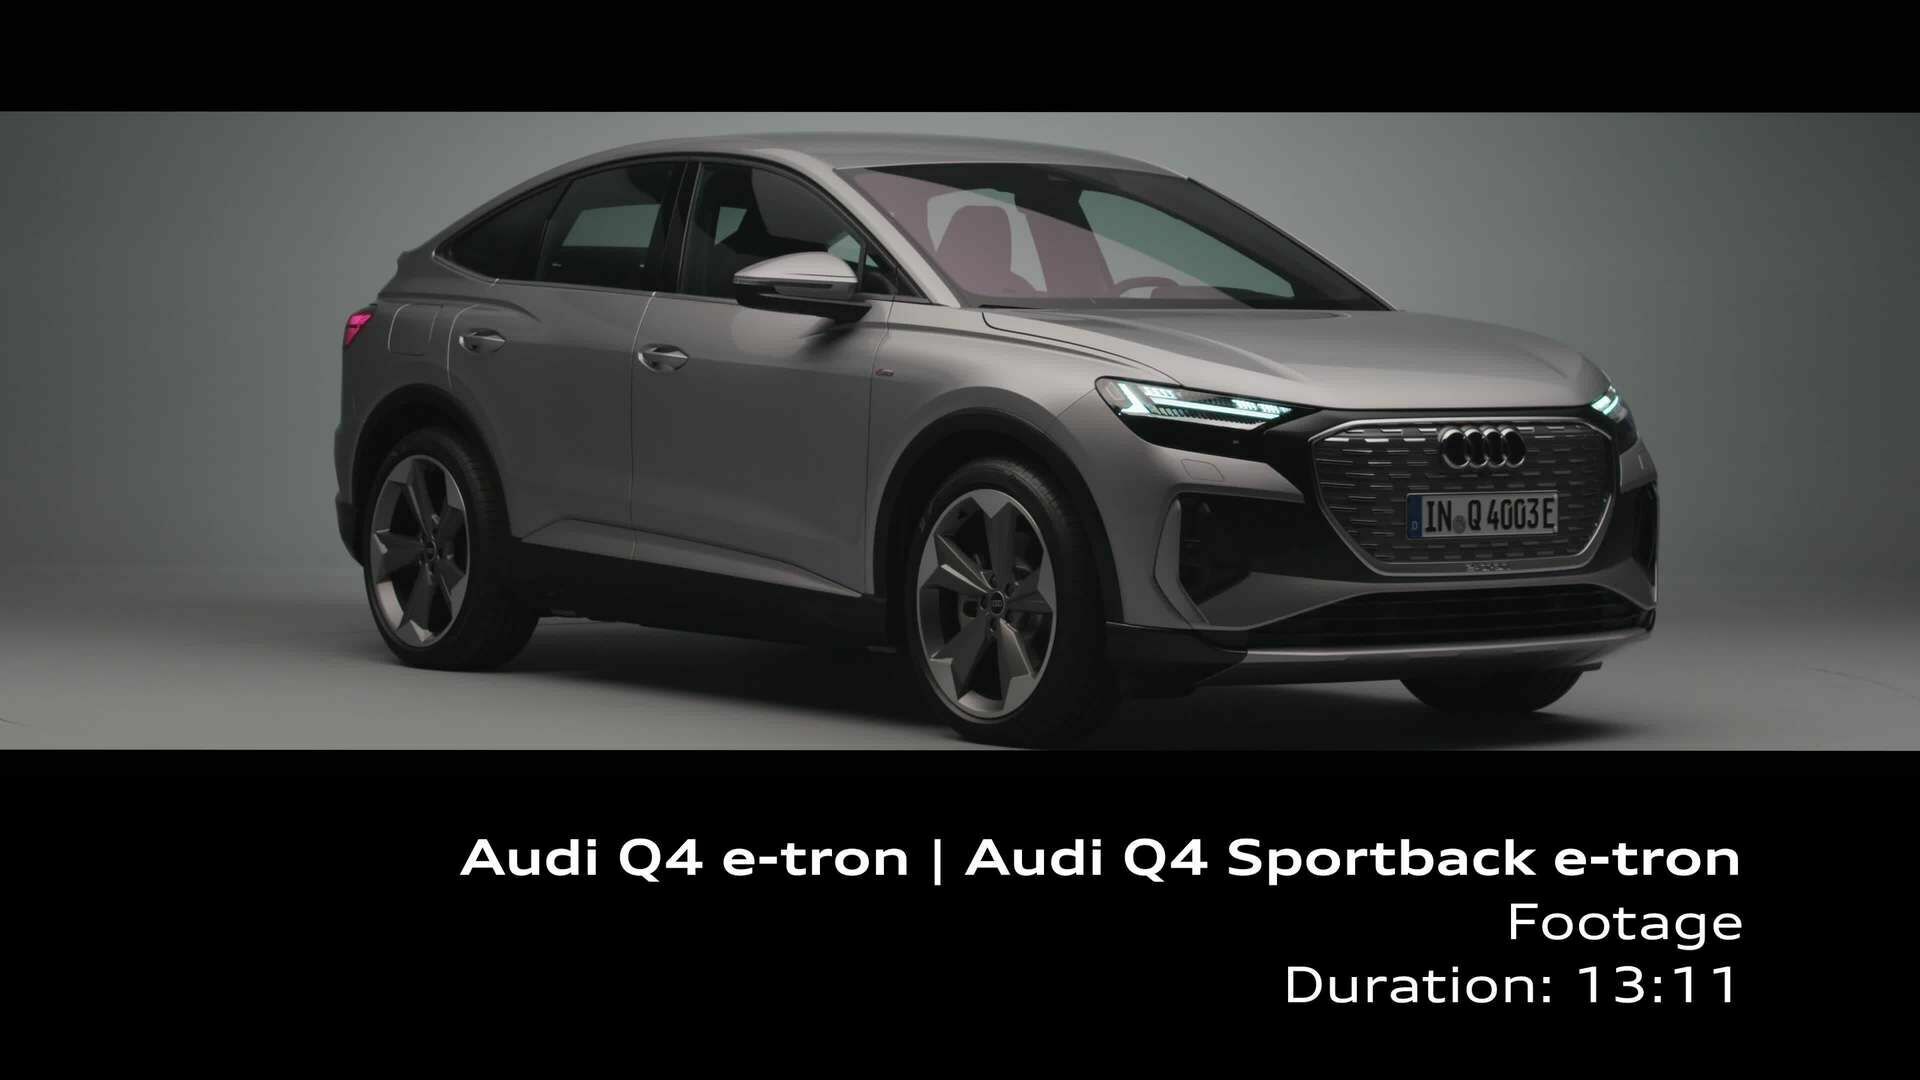 Footage: Audi Q4 e-tron and Q4 Sportback e-tron in the studio